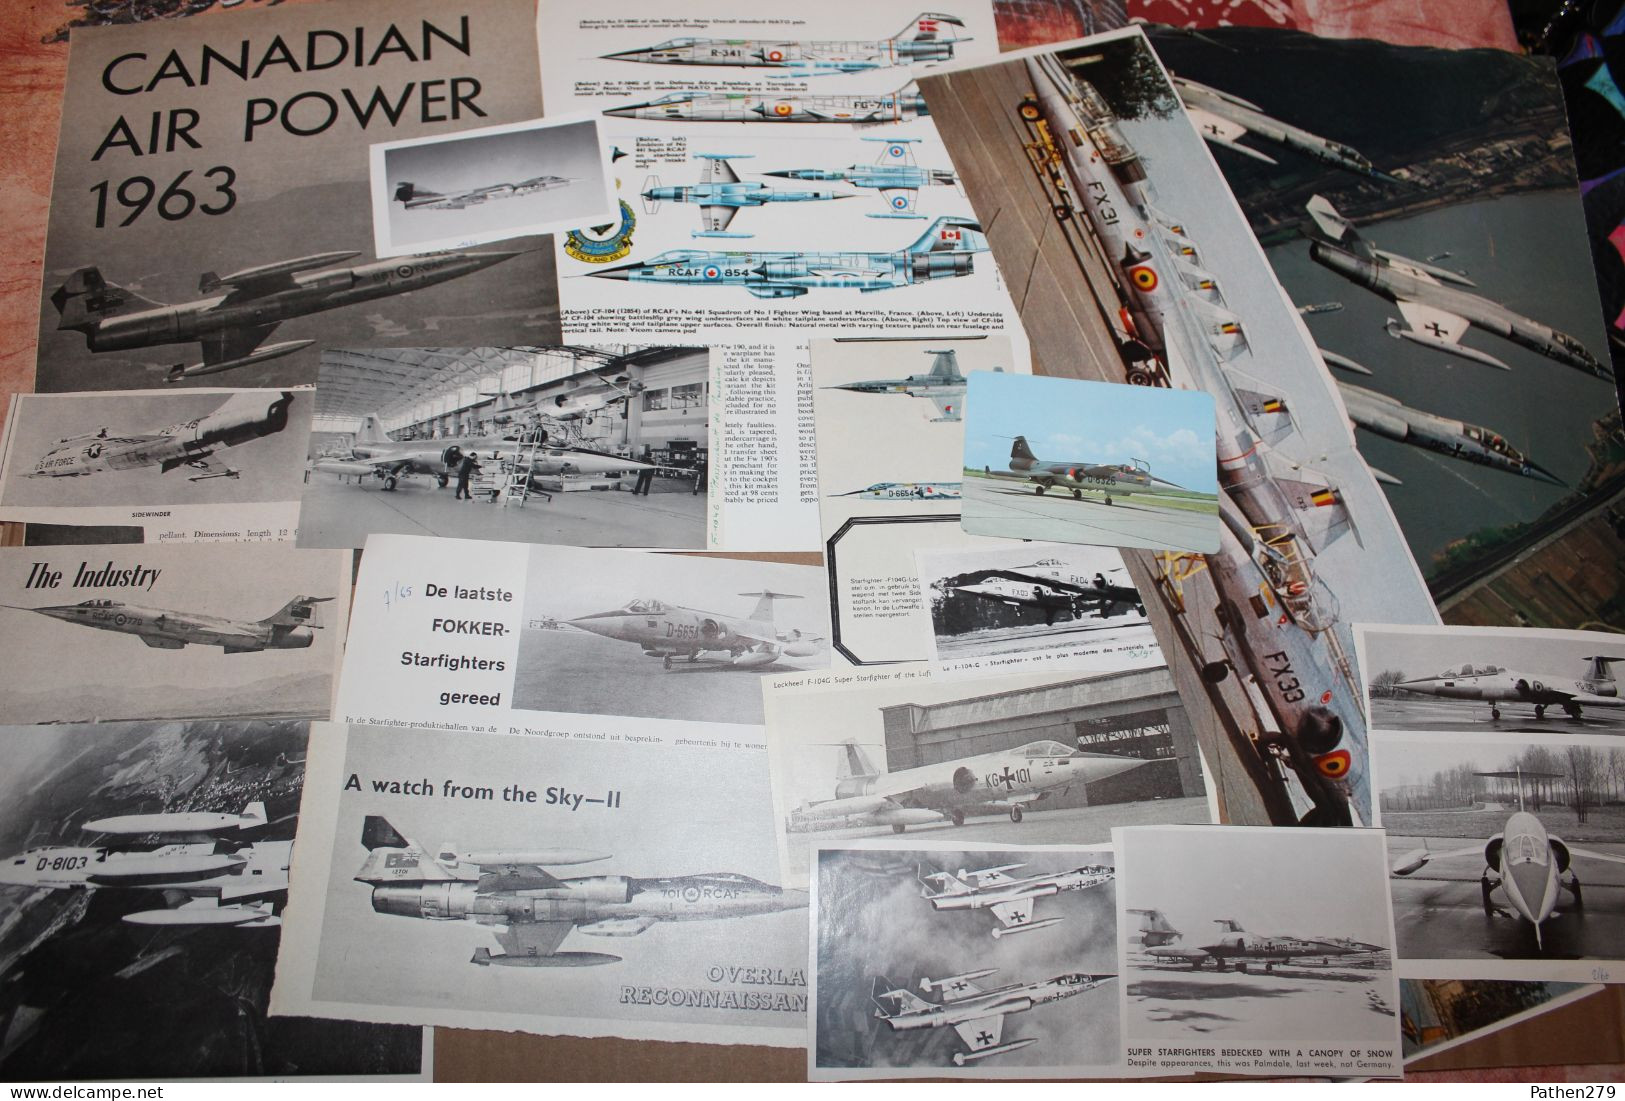 Lot de 667g d'anciennes coupures de presse et photos de l'aéronef américain Lockheed F-104 "Starfighter"